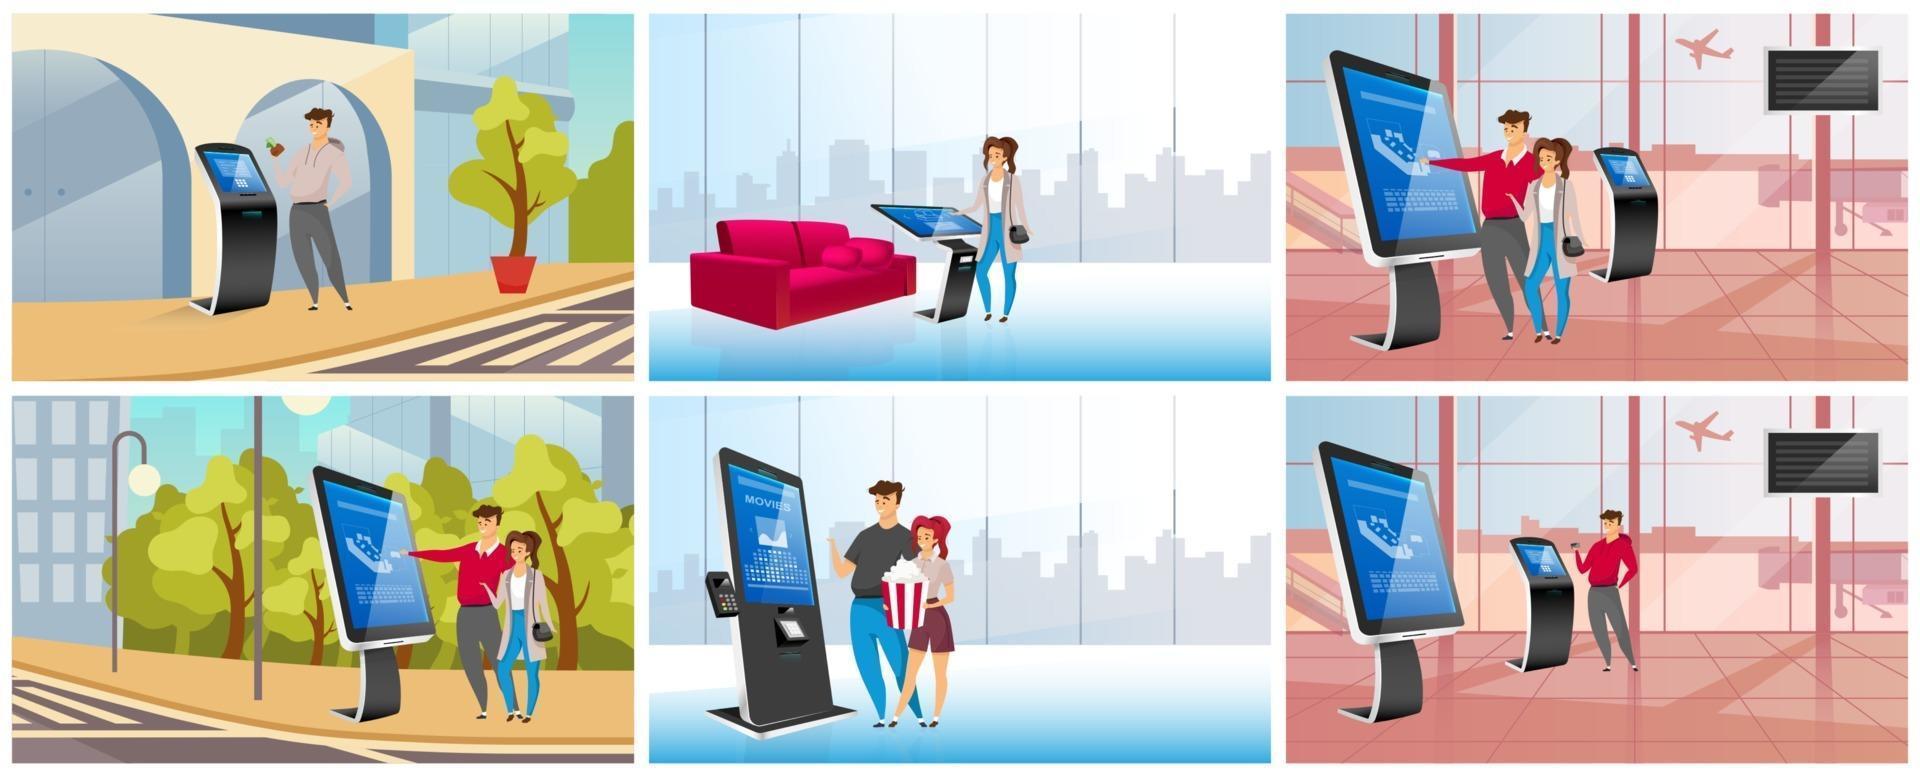 moderne zelfbedieningskiosken egale kleur vector illustraties set. mensen die interactieve informatieborden stripfiguren gebruiken. commerciële digitale panelen, innovatieve terminals met touchscreen